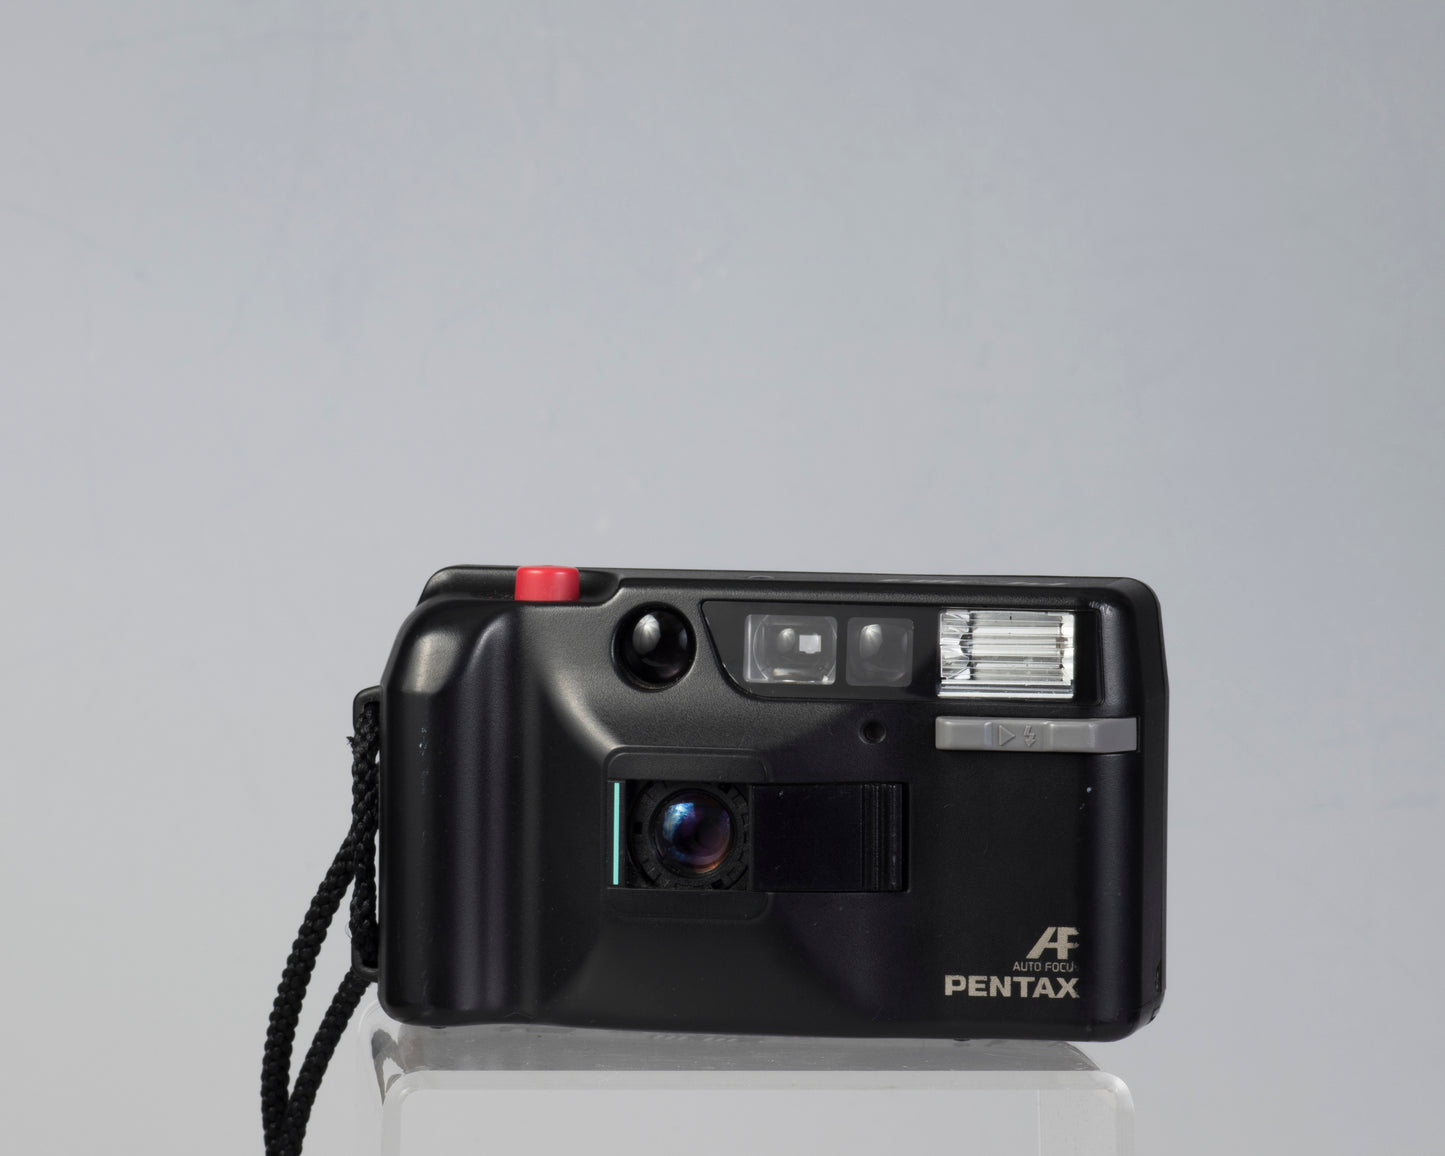 Appareil photo compact Pentax PC-303 35 mm * le flash ne fonctionne pas ; sinon OK* (série 8251393)